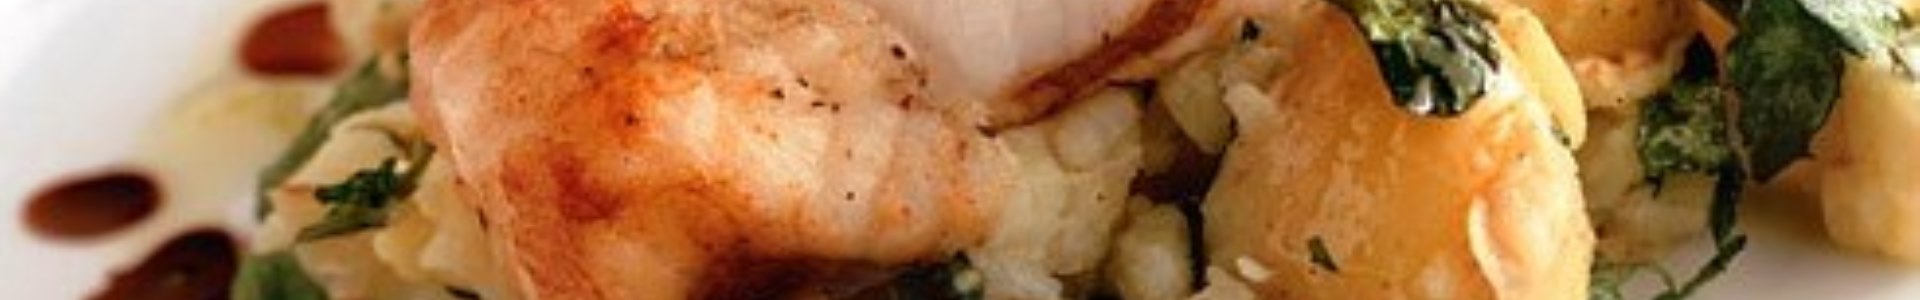 Смажений морський чорт з картоплею та крес-салатом